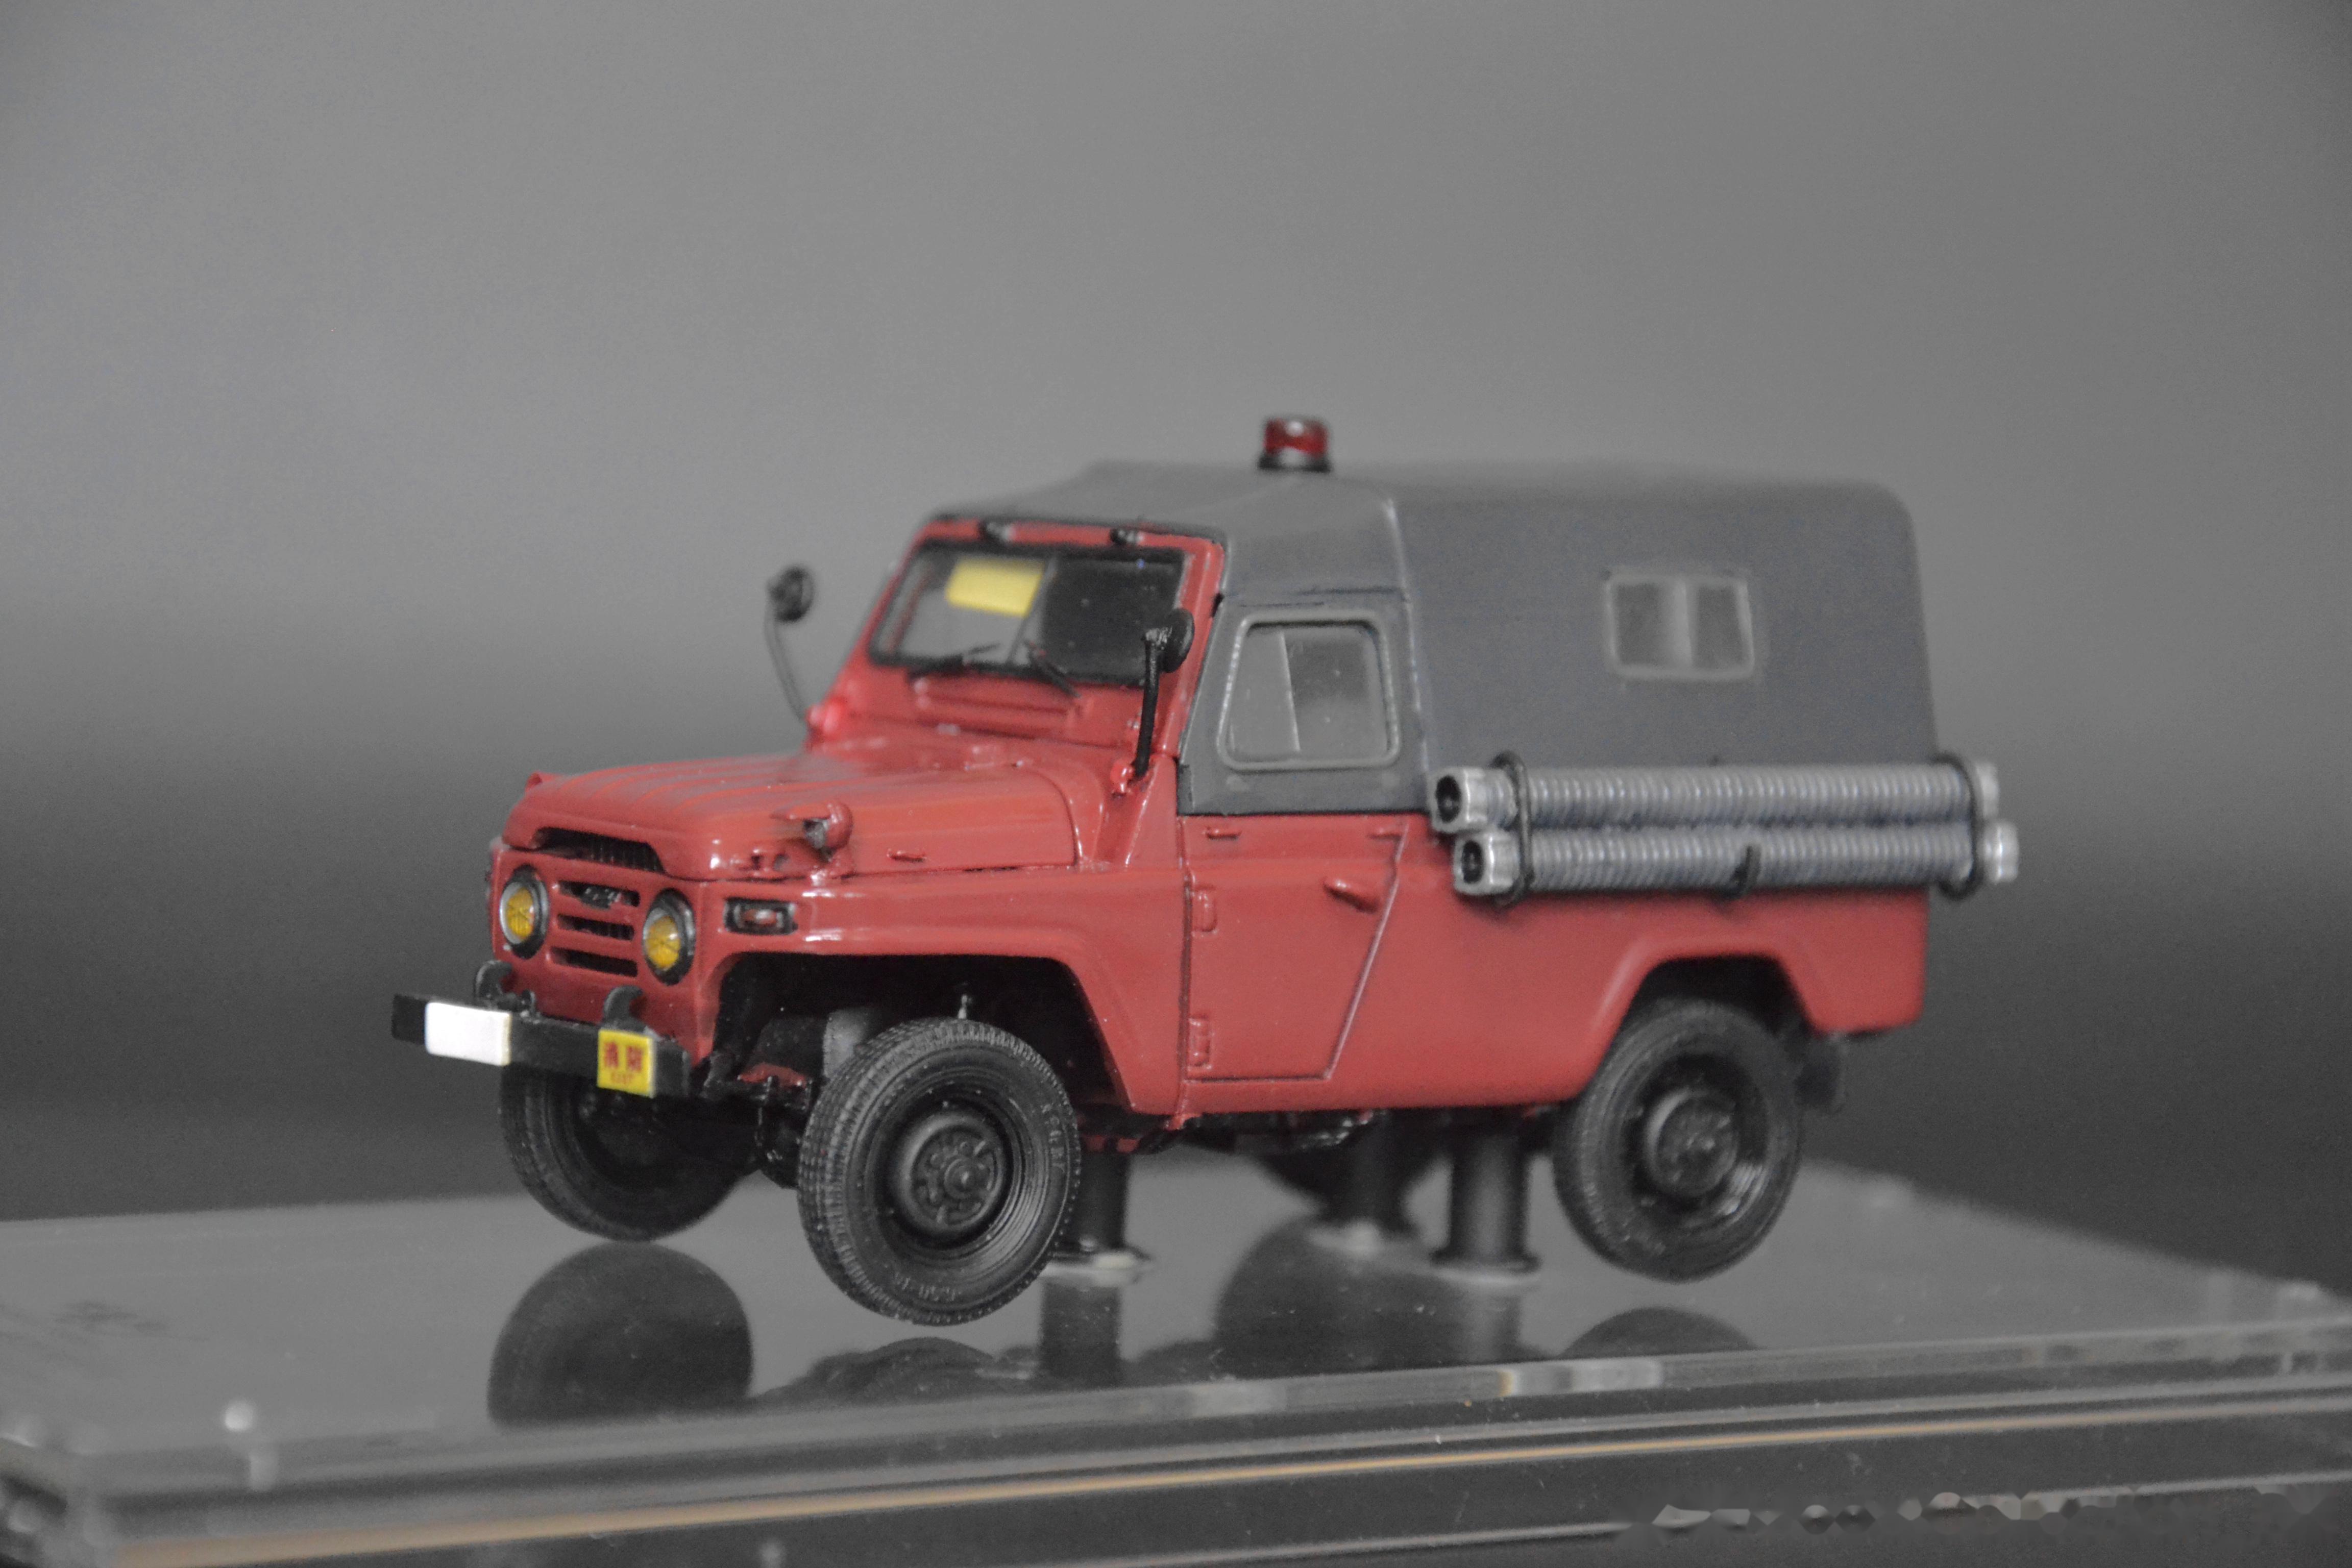 记忆中的由bj212a改装的一款轻型消防车,实车由北京消防器材厂改装